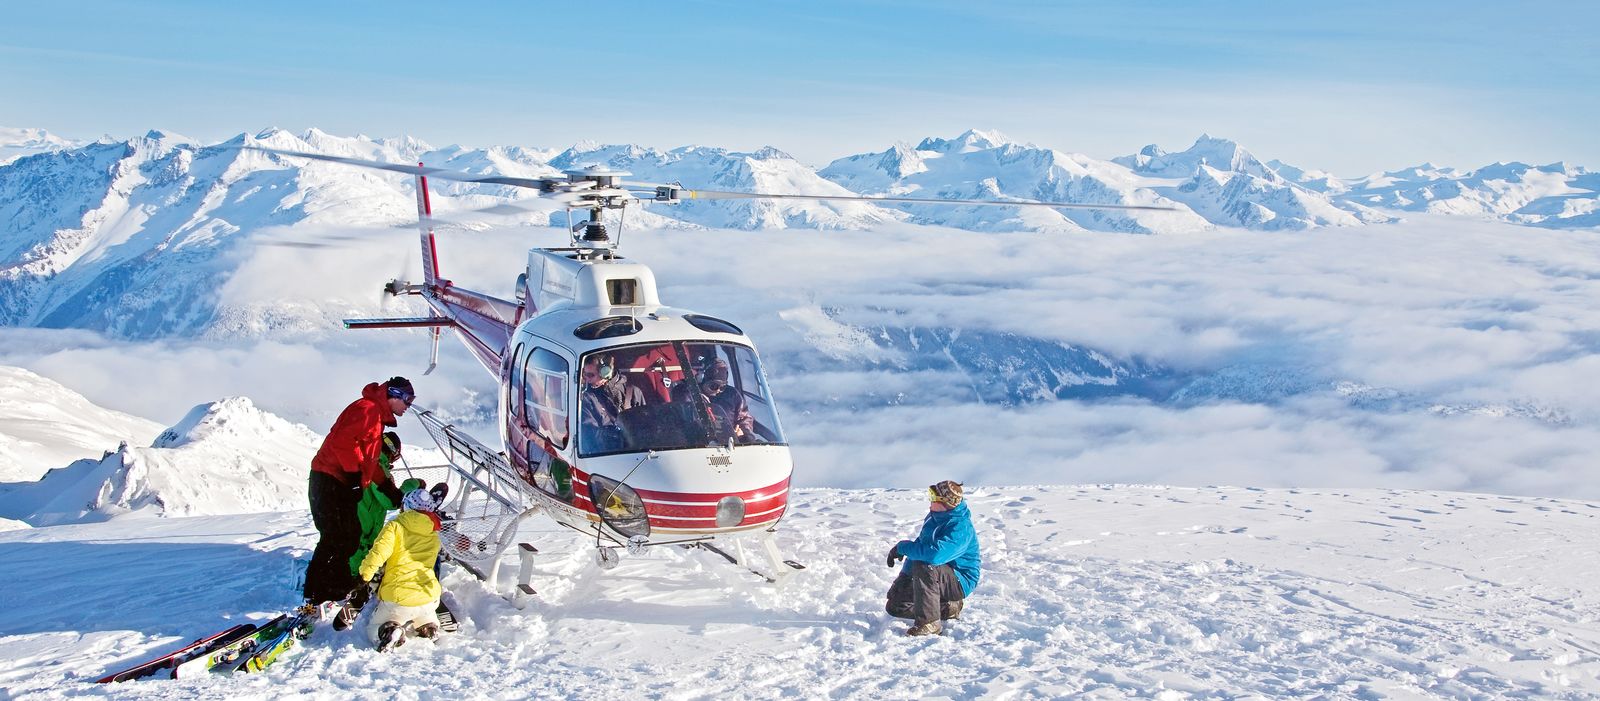 Helikopter setzt Skifahrer ab